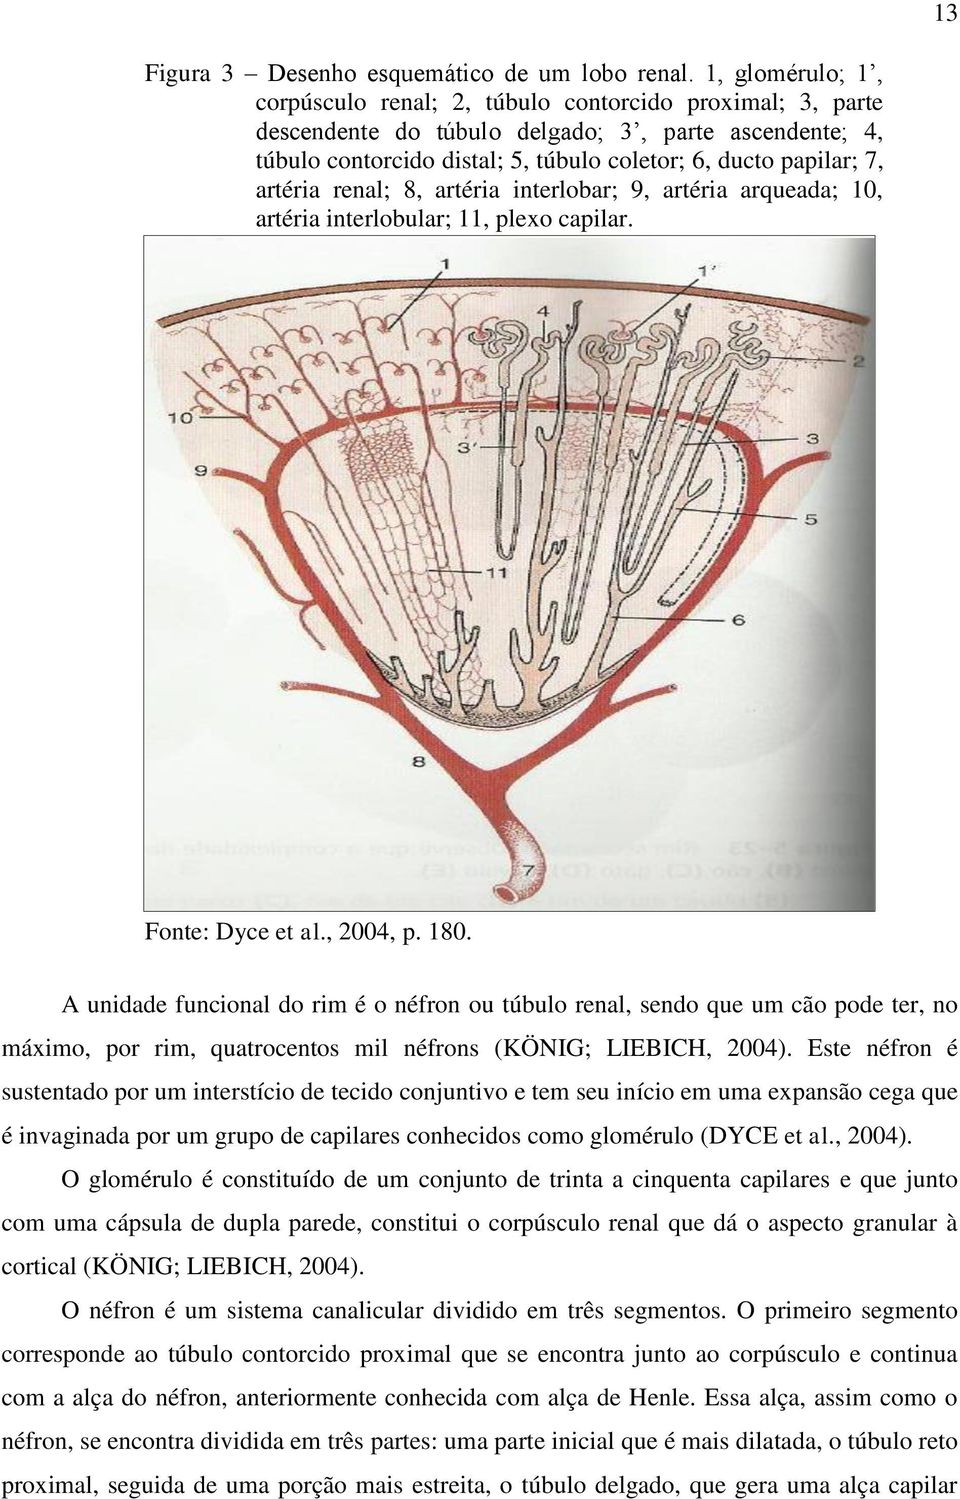 artéria renal; 8, artéria interlobar; 9, artéria arqueada; 10, artéria interlobular; 11, plexo capilar. Fonte: Dyce et al., 2004, p. 180.